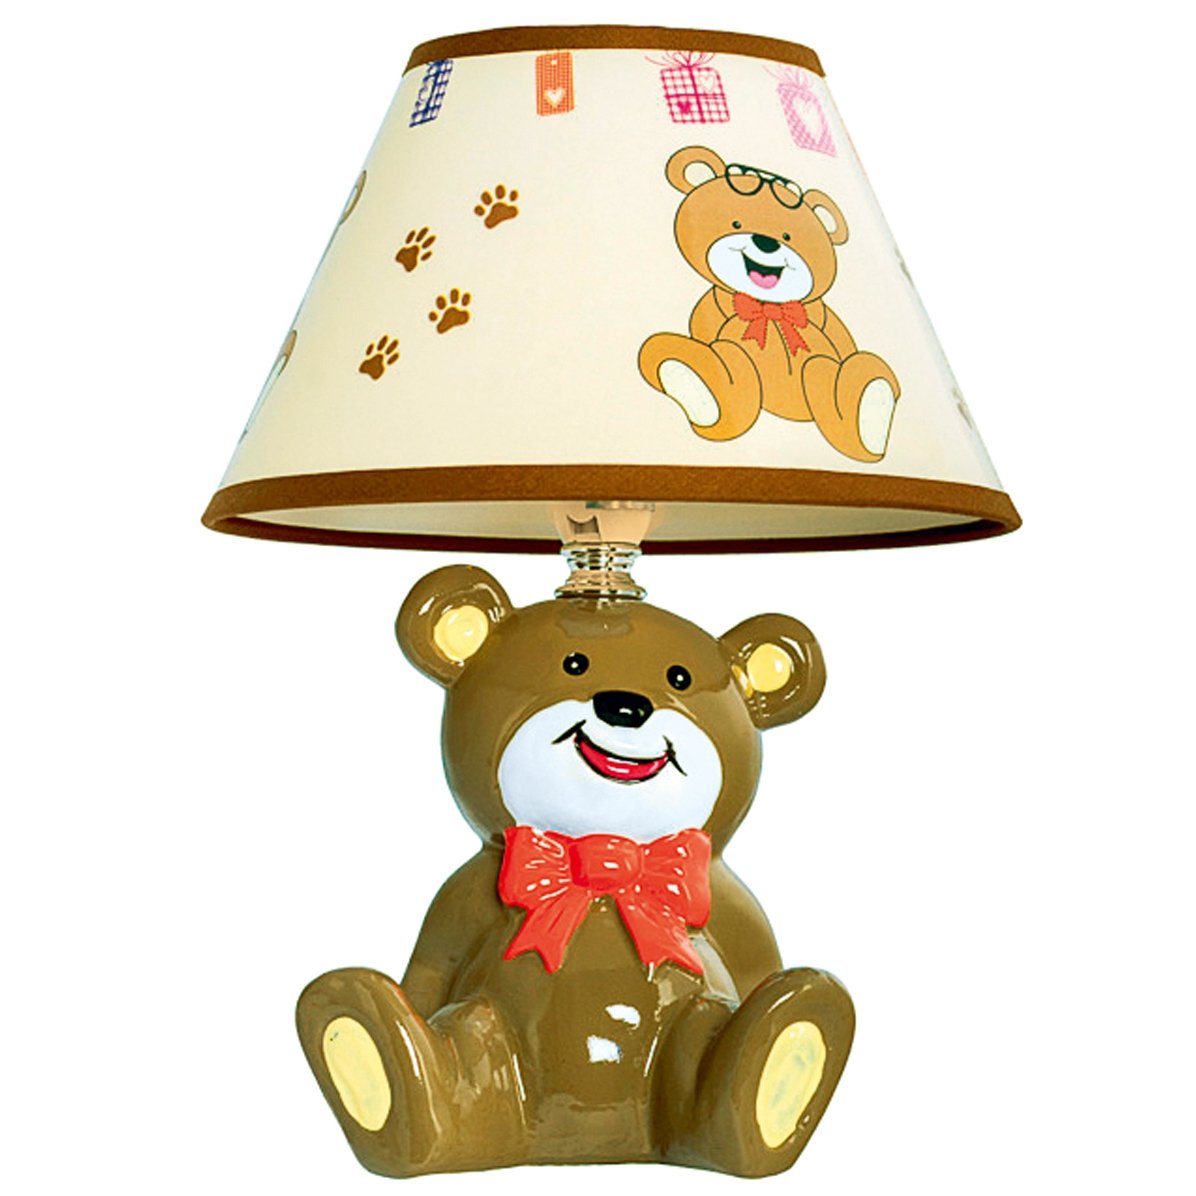 Картинка лампа для детей в детском саду